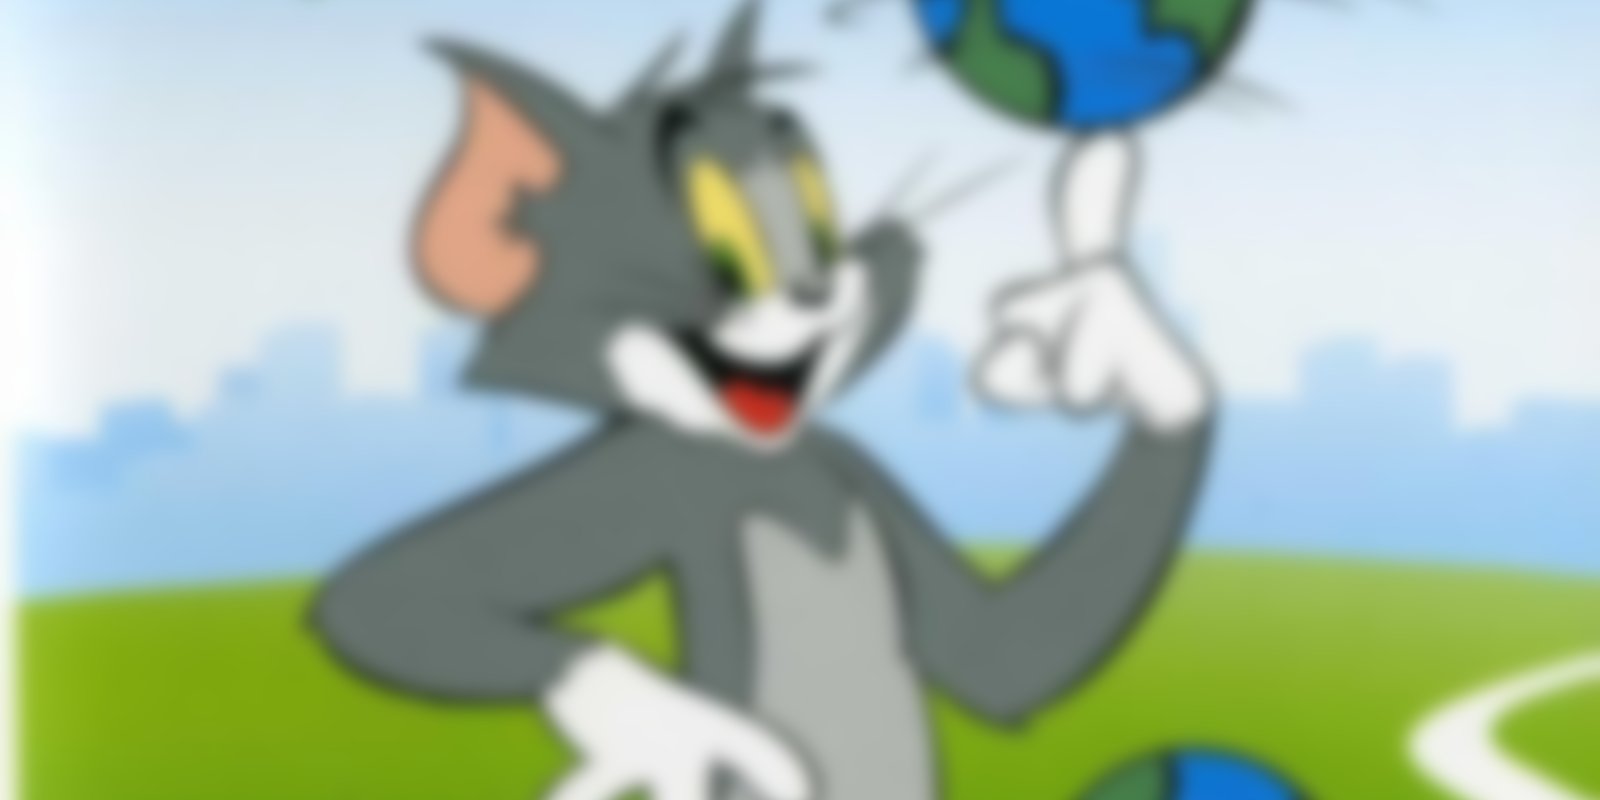 Tom & Jerry - Rund um den Globus